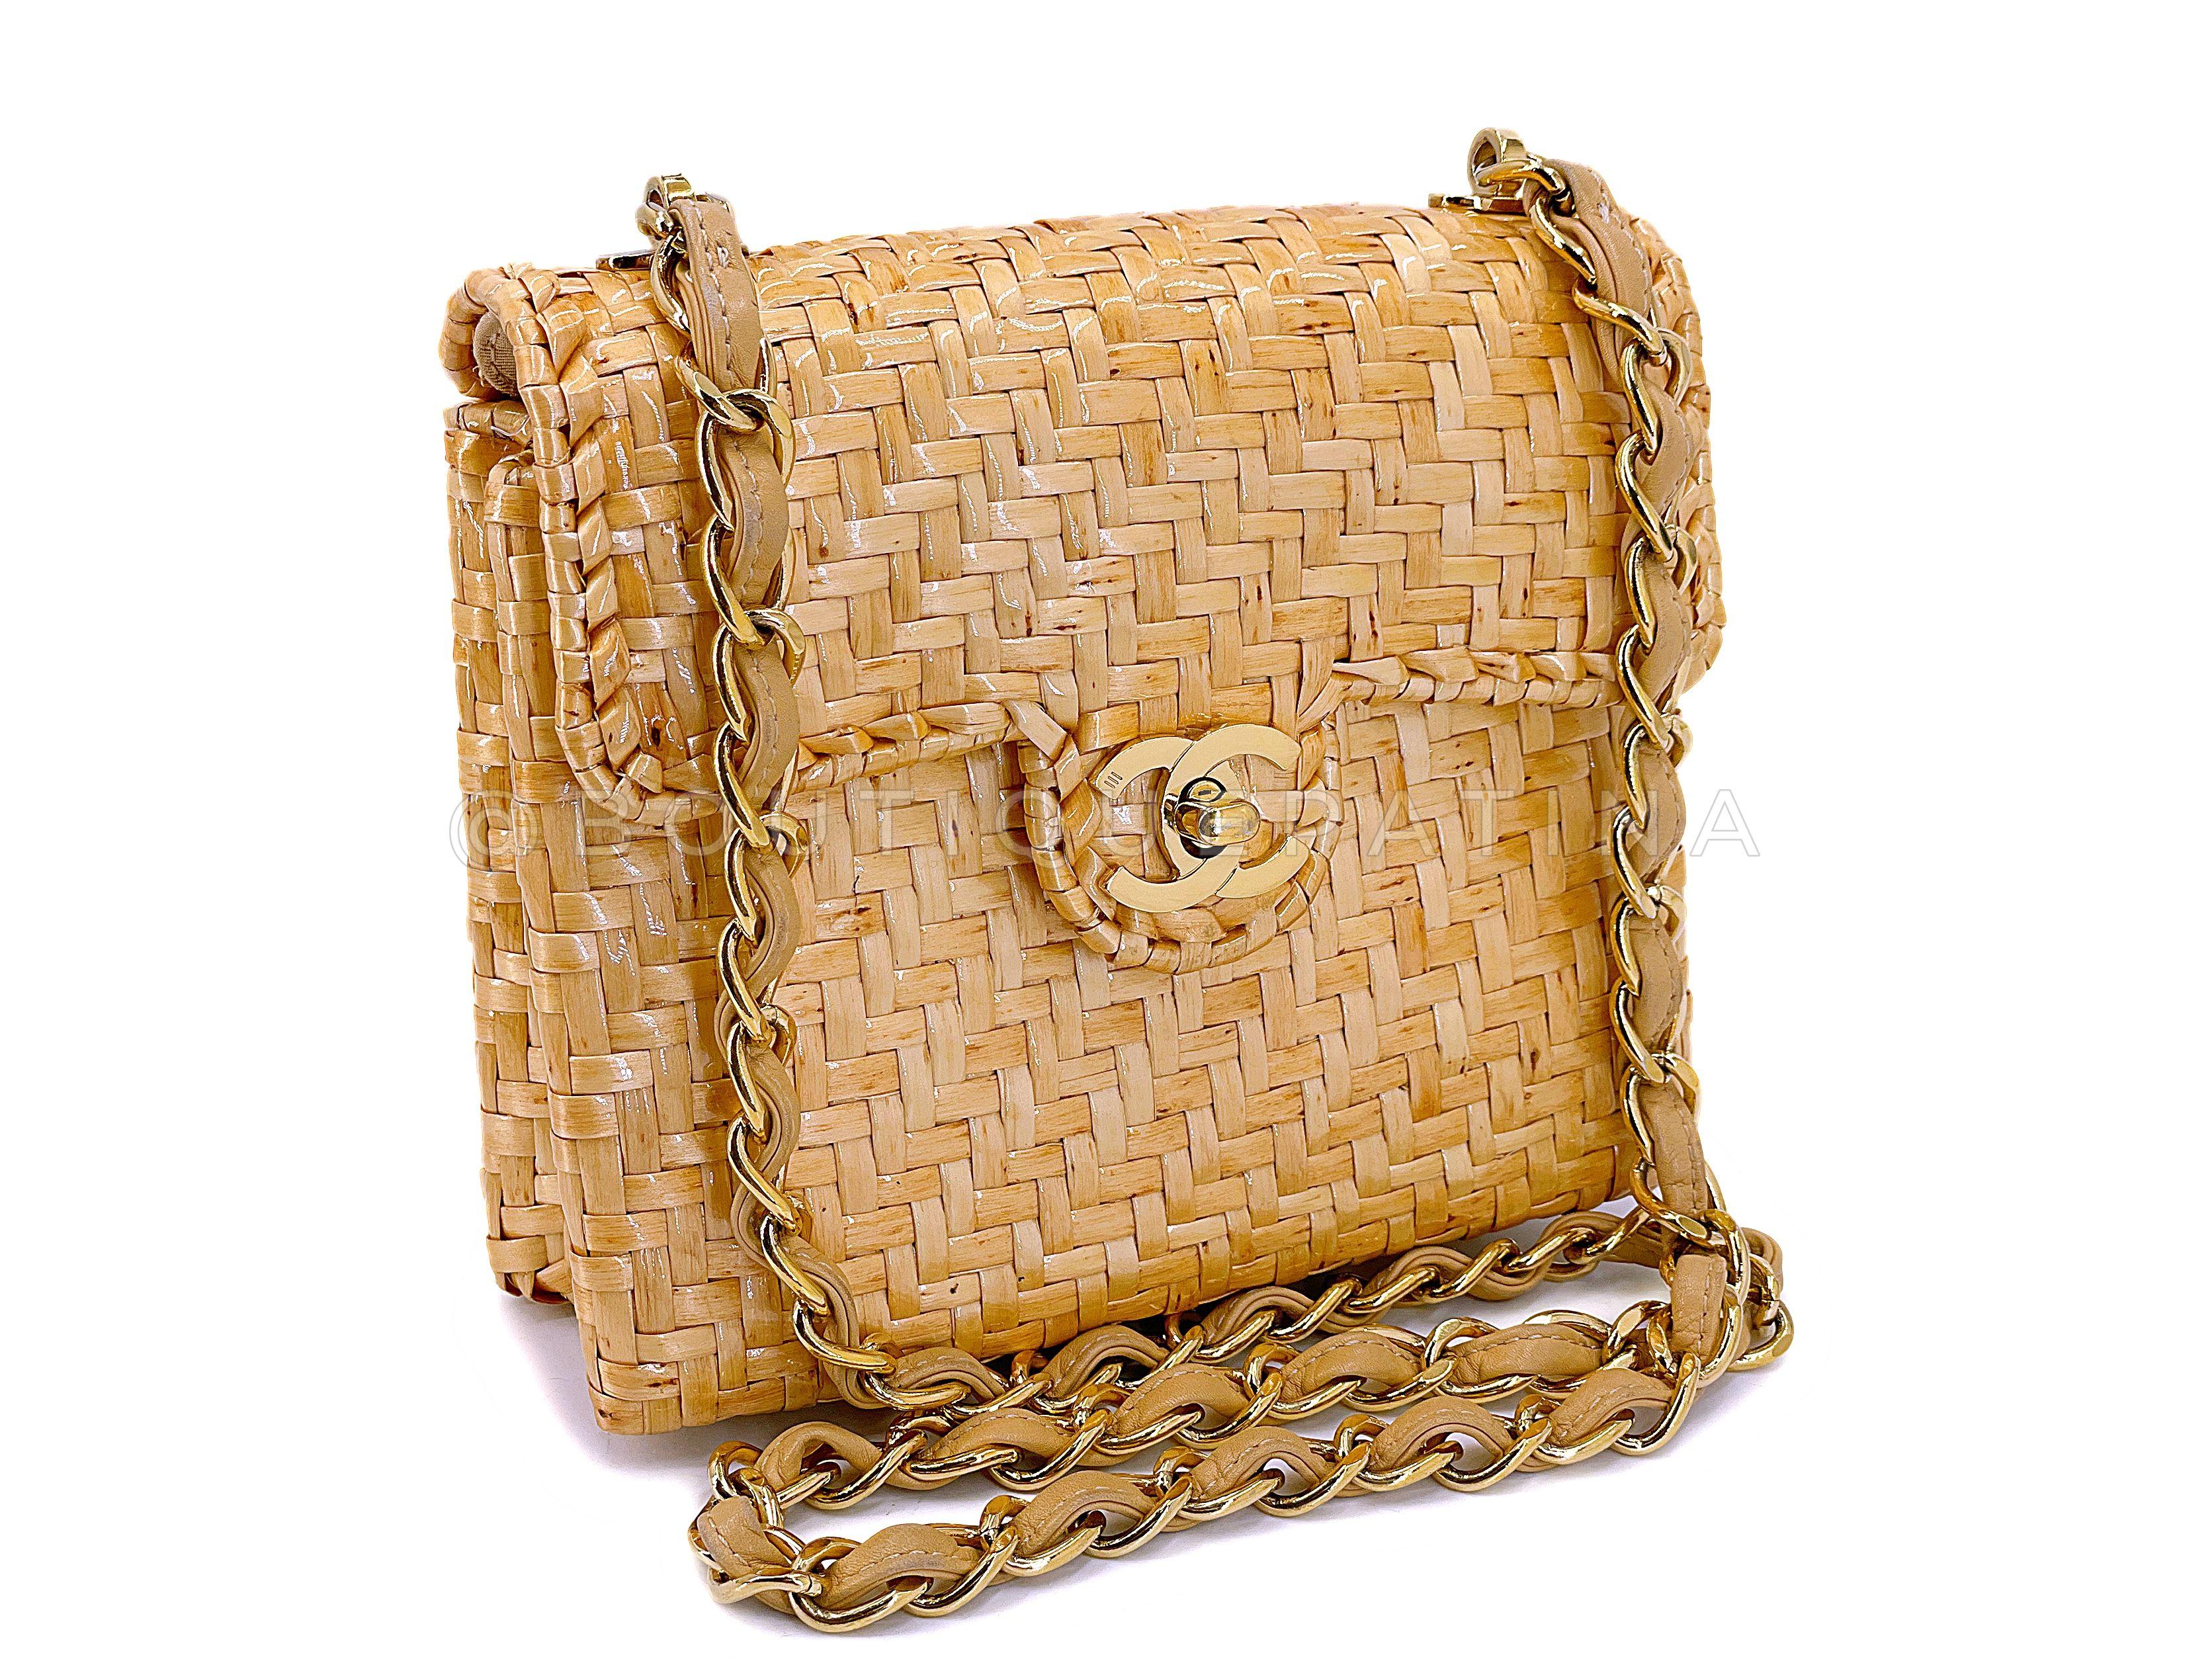 Artikel speichern: 67780
Seltene Chanel 2000 Vintage Rattan Wicker Mini Flap Bag 24k GHW ist ein echtes Sammlerstück. Wenn Sie wissen, dass Sie wissen - eine Tasche, die selten, wenn überhaupt, vor allem in diesem Modell auftauchen wird. 

Seit 20